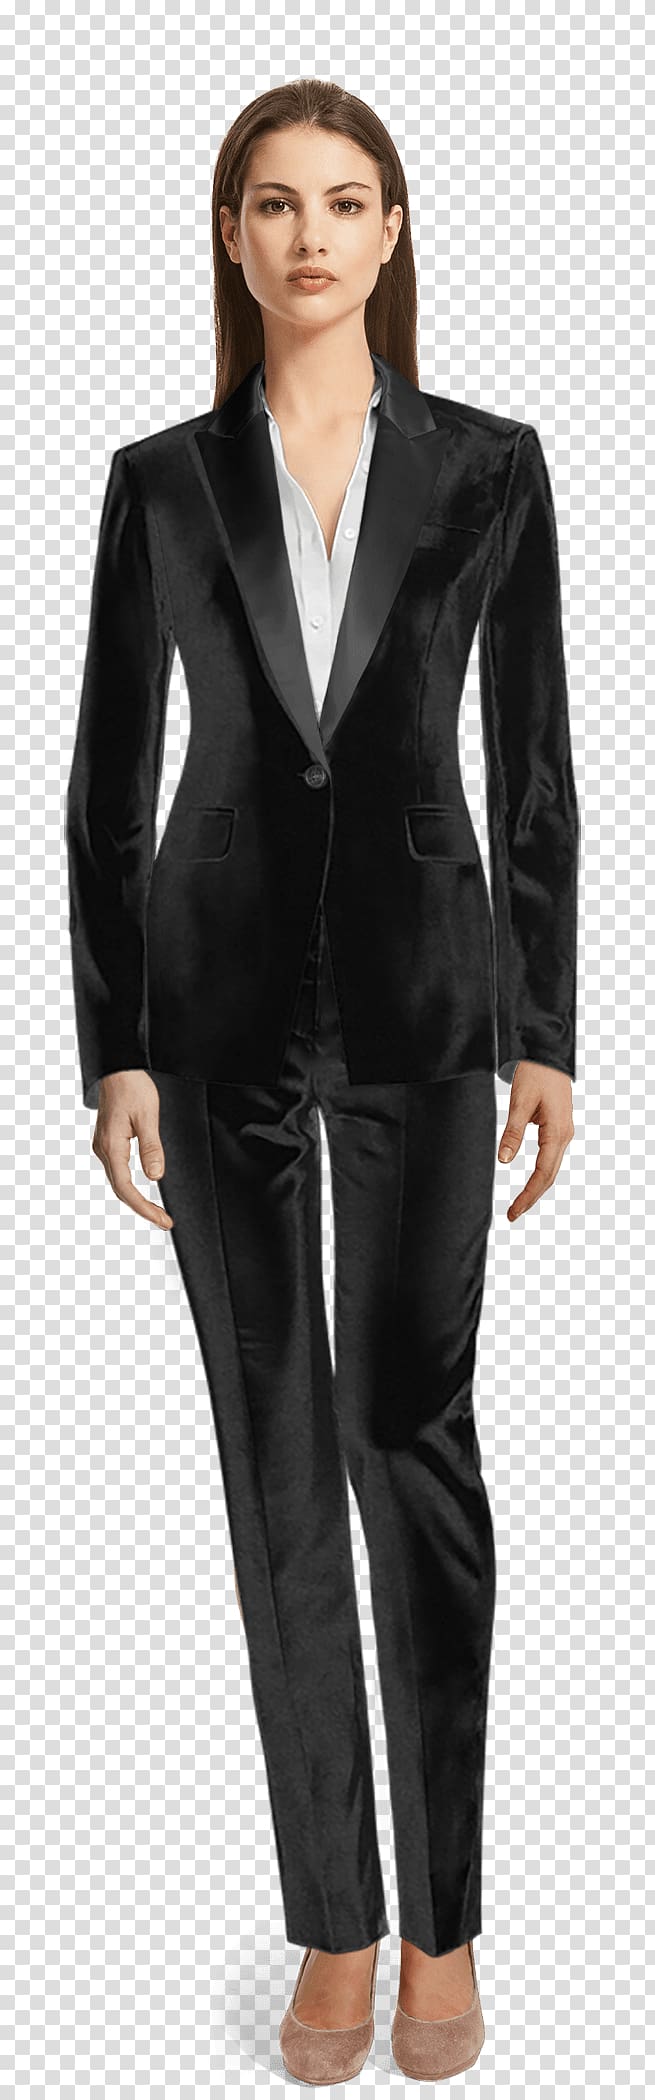 Suit Lapel Tuxedo Blazer Clothing, suit woman transparent background PNG clipart